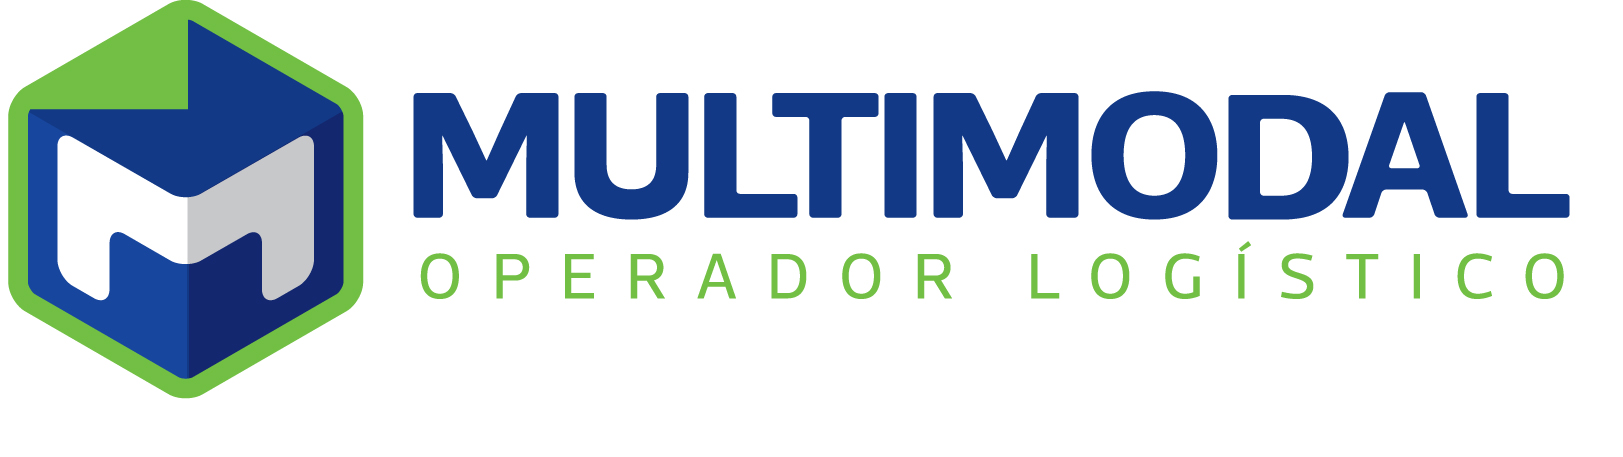 MULTIMODAL's logo